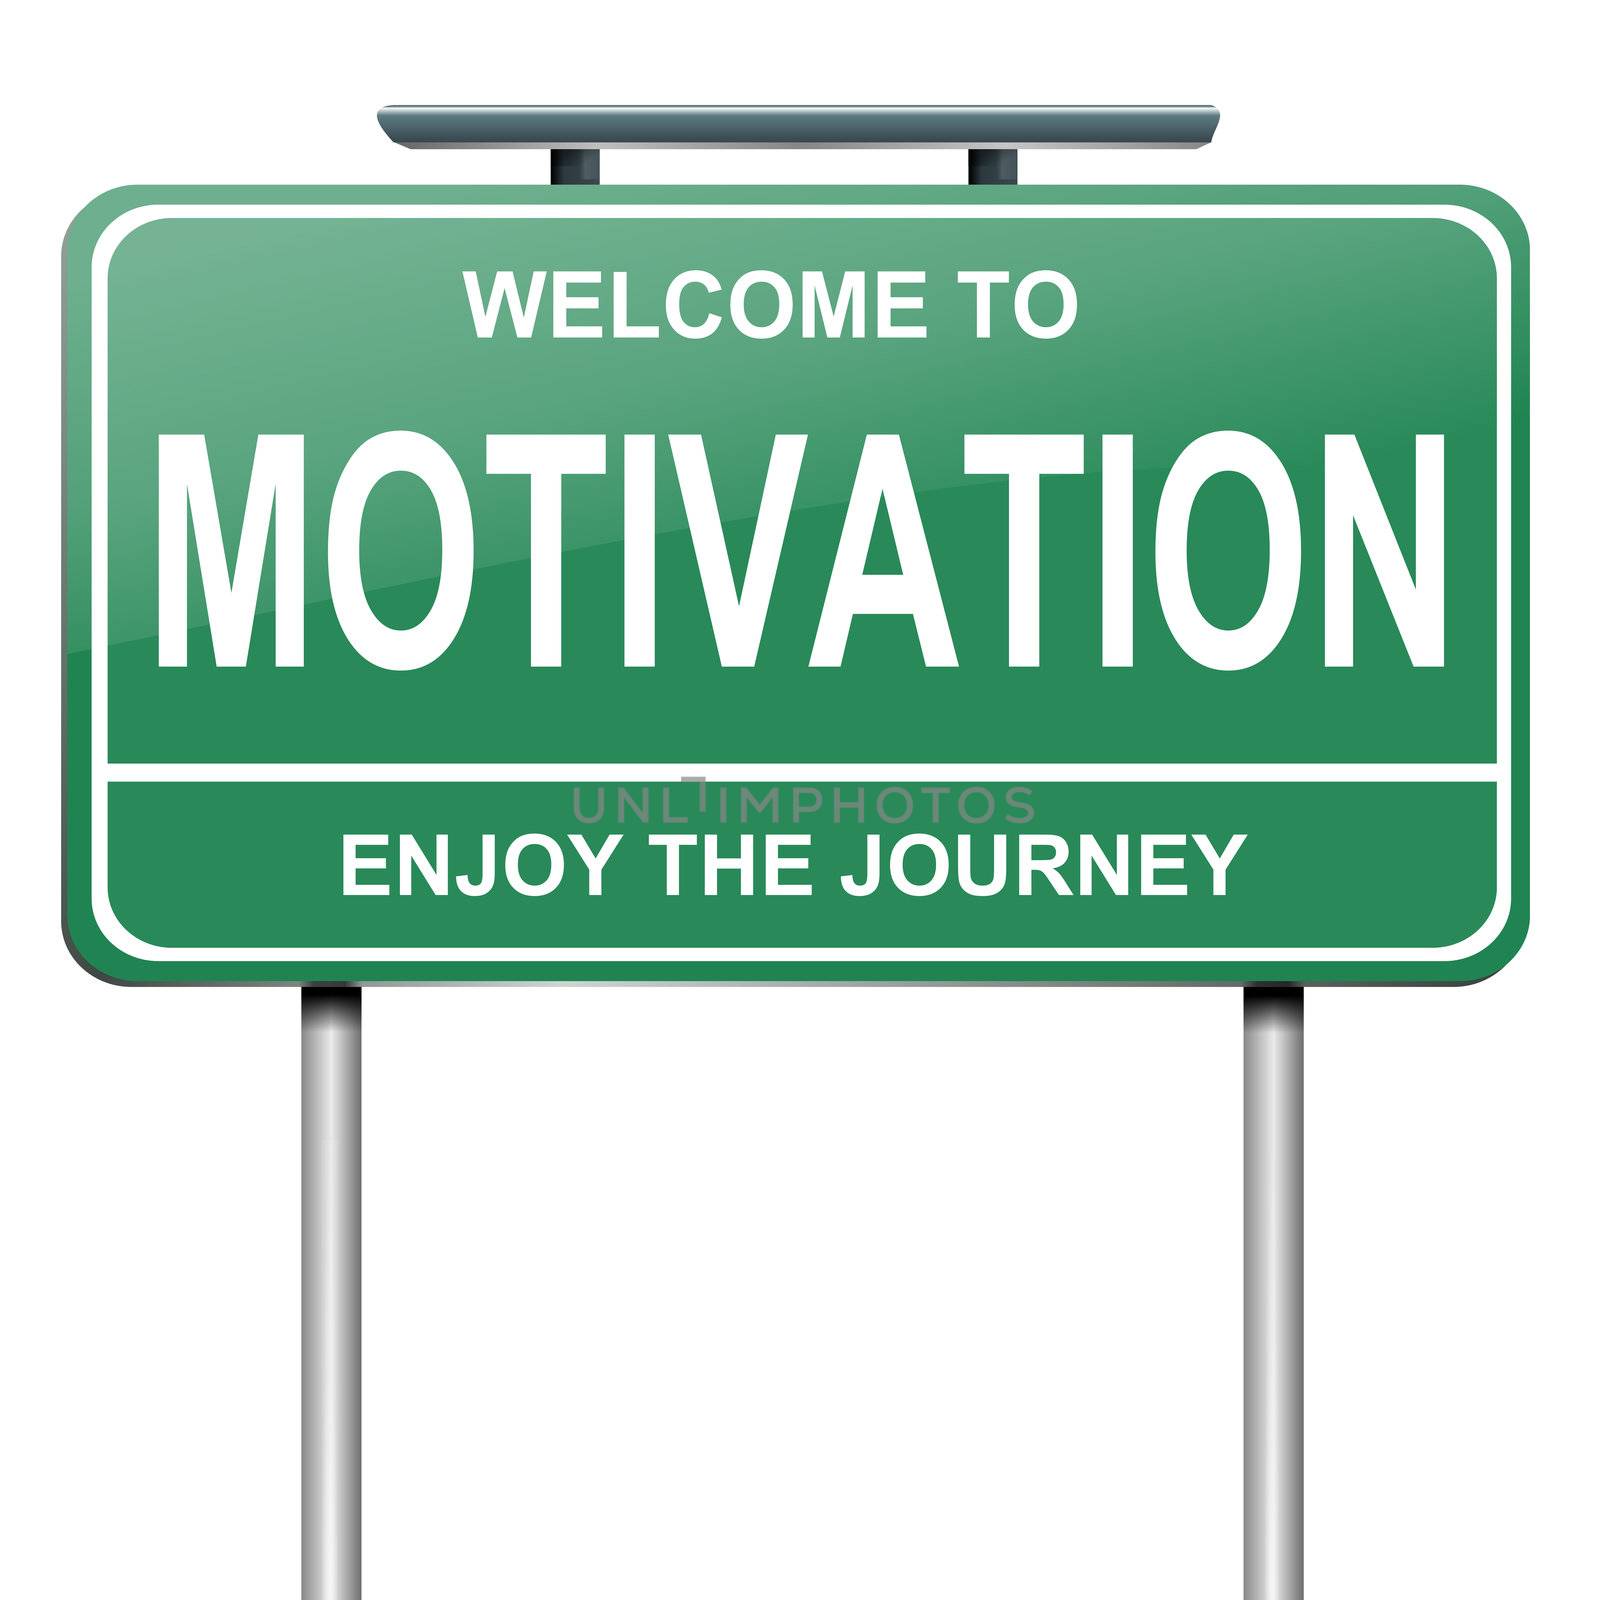 Motivation concept. by 72soul